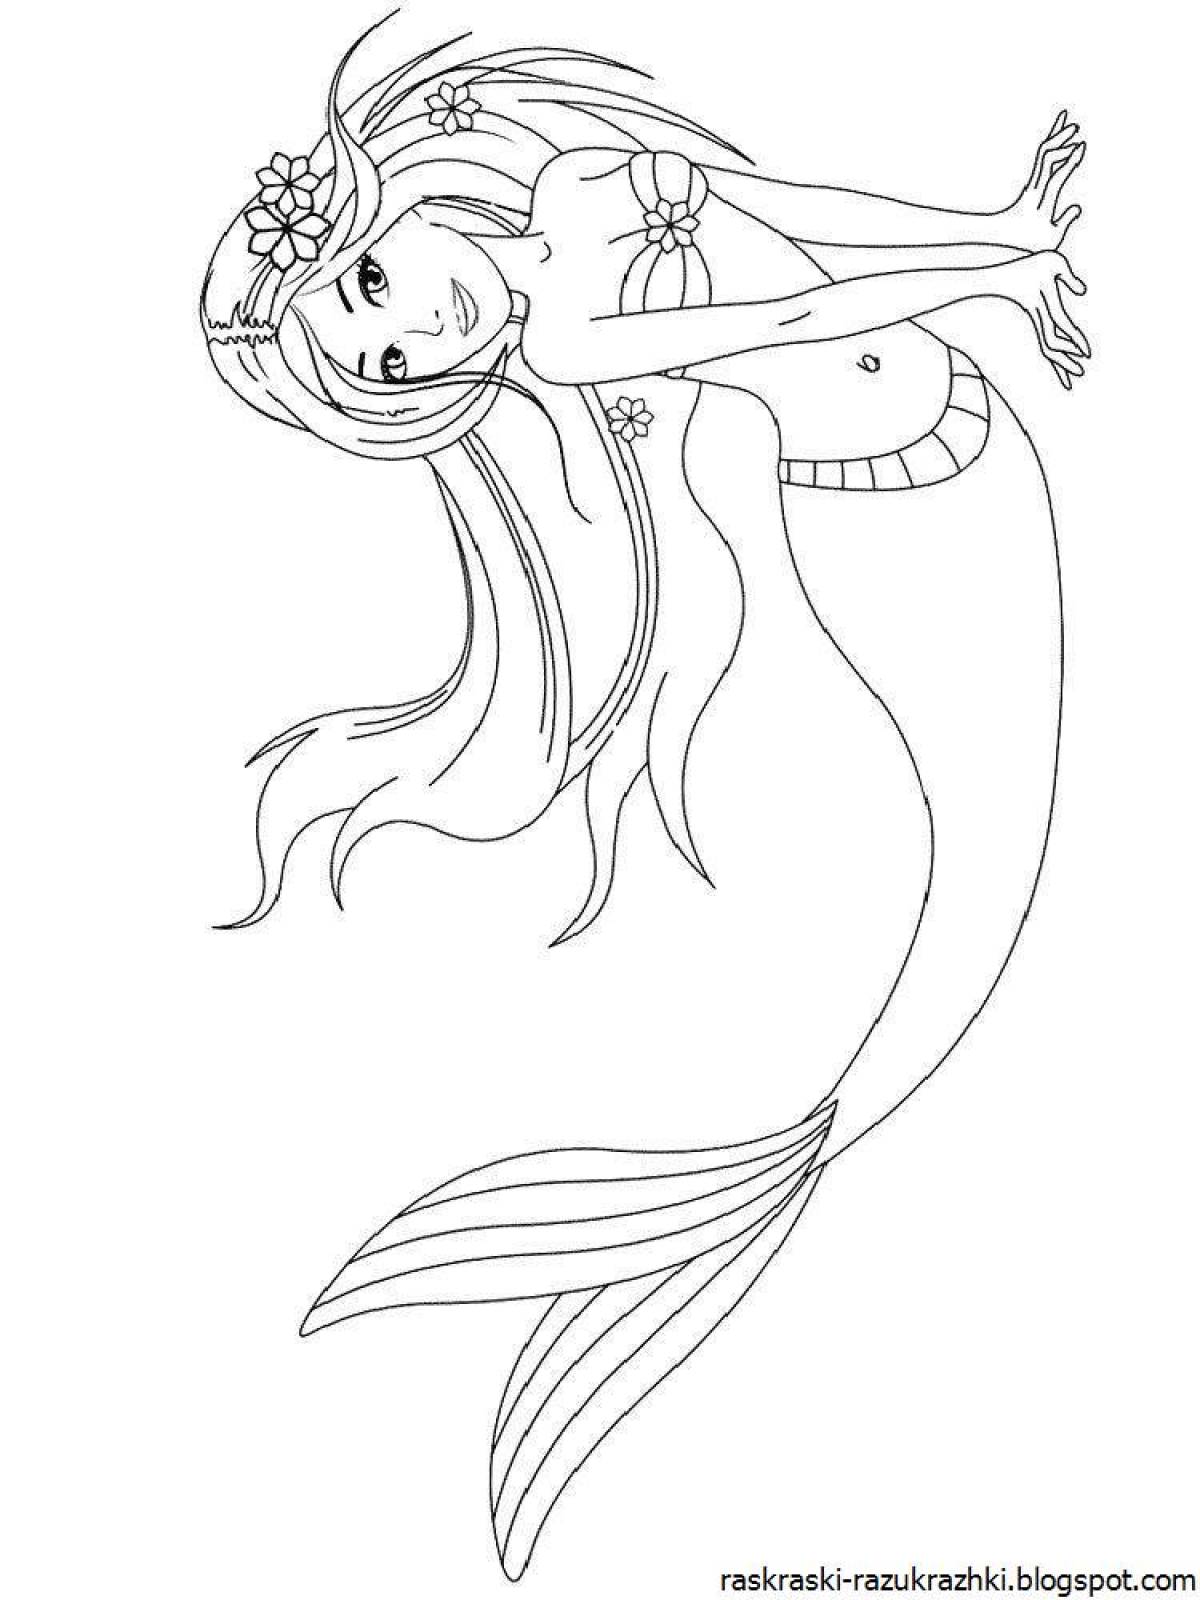 Elegant mermaid coloring book for kids